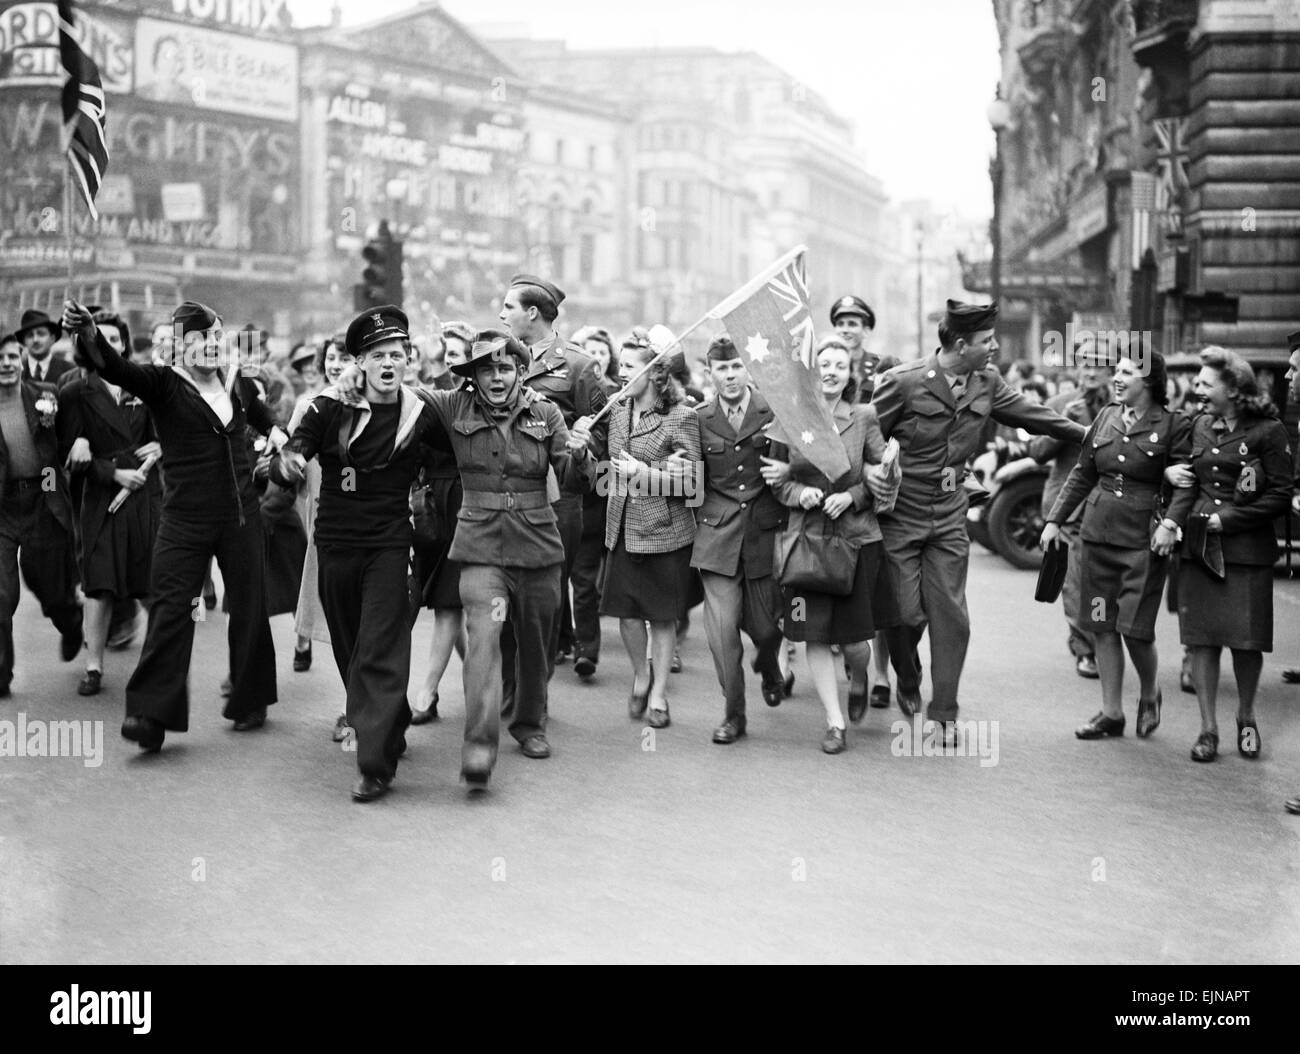 VE Day Feierlichkeiten in London am Ende des zweiten Weltkriegs. Riesige Menschenmengen versammelten sich um Piccadilly Circus während der Feierlichkeiten mit Soldatinnen und Soldaten wehende Fahnen ihrer Nation. 8. Mai 1945. Stockfoto